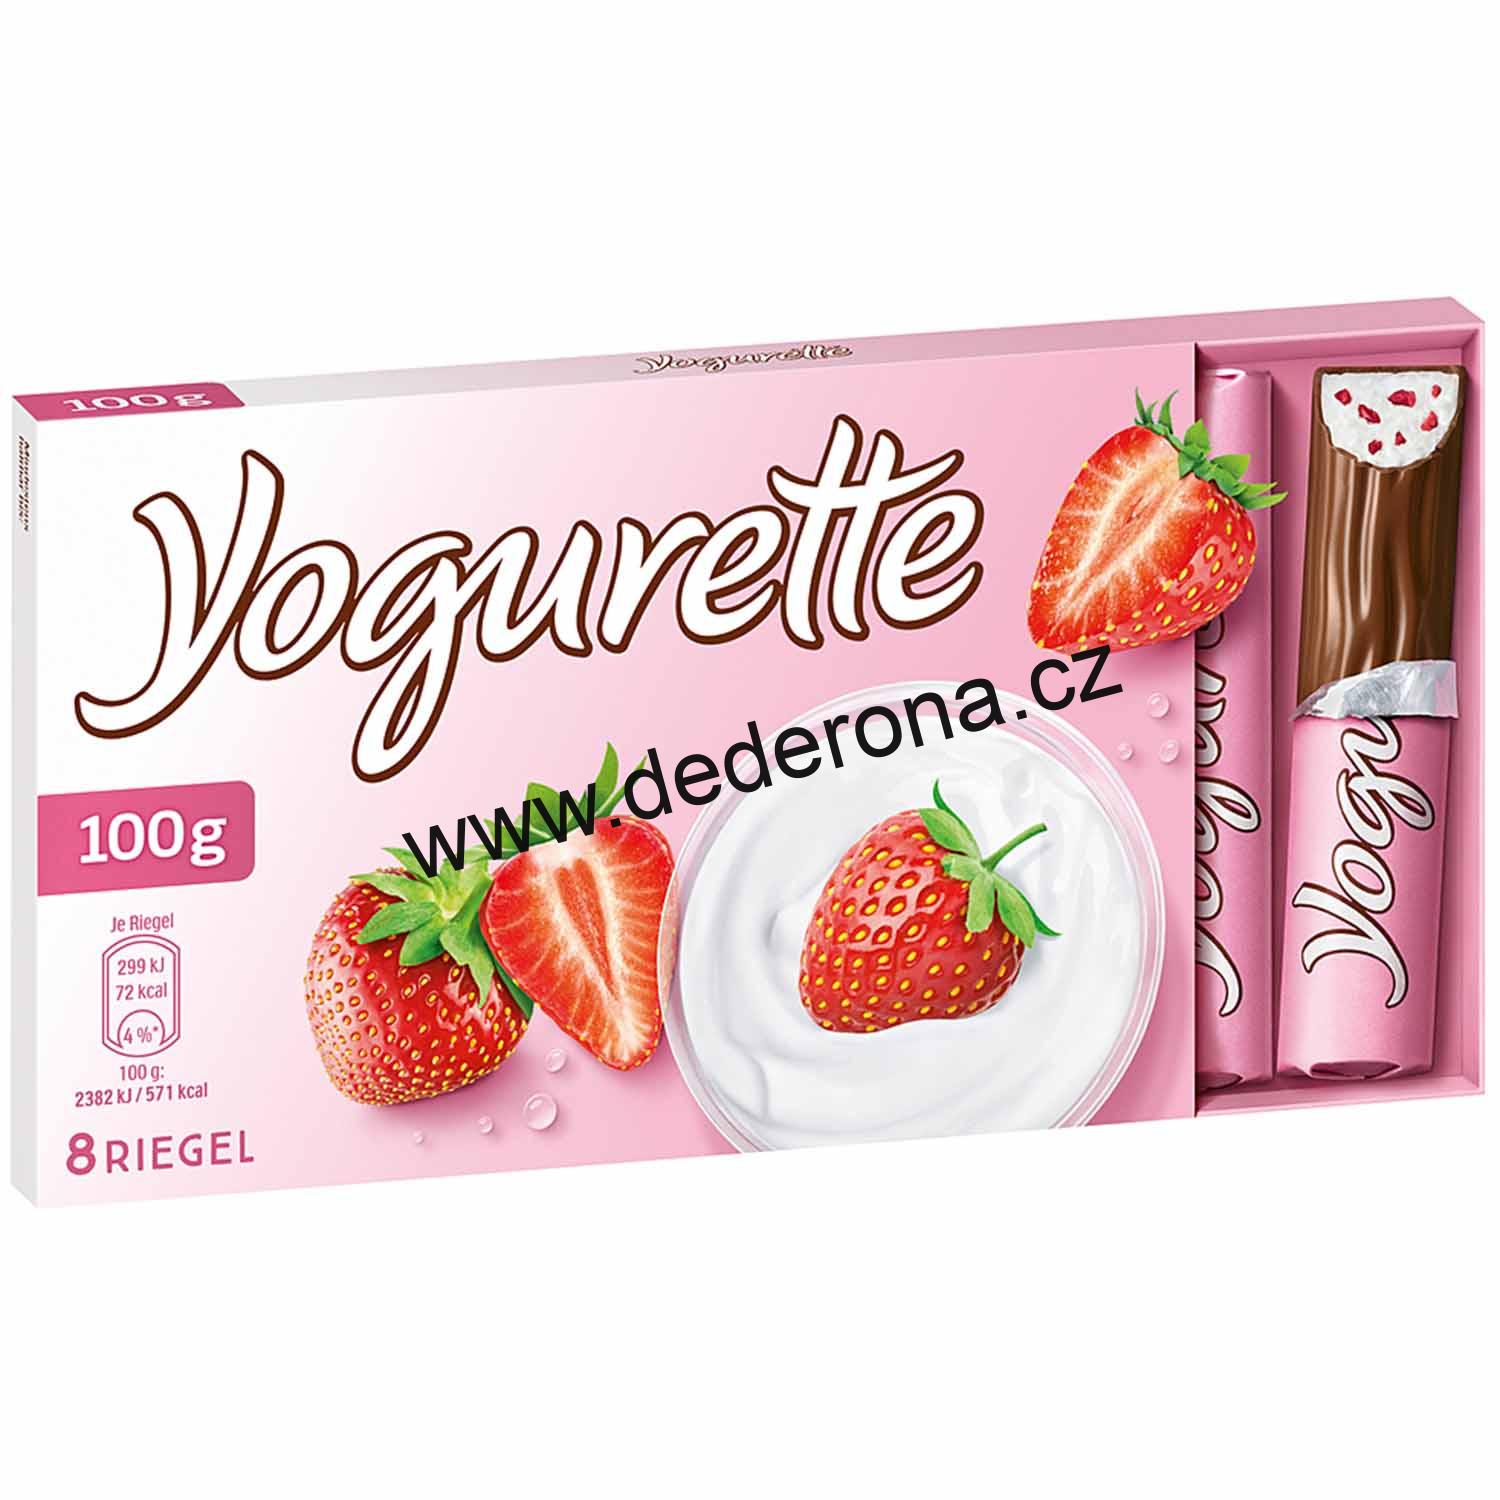 Yogurette - Čokoládky s jogurtem JAHODA 100g - Německo!